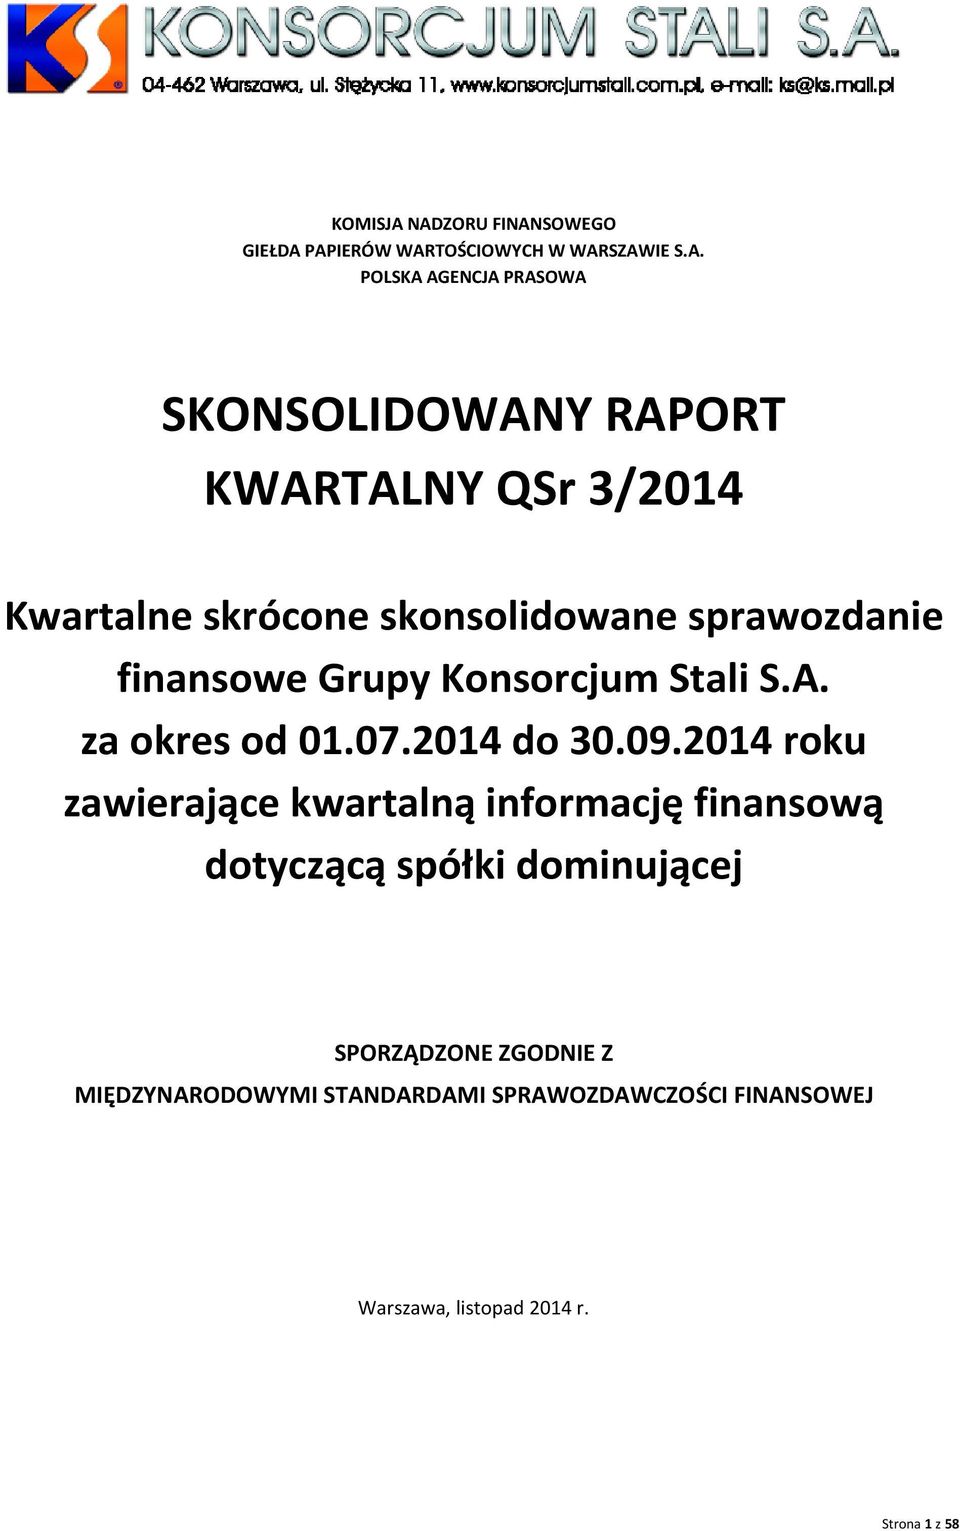 RAPORT KWARTALNY QSr 3/2014 Kwartalne skrócone skonsolidowane sprawozdanie finansowe Grupy Konsorcjum Stali S.